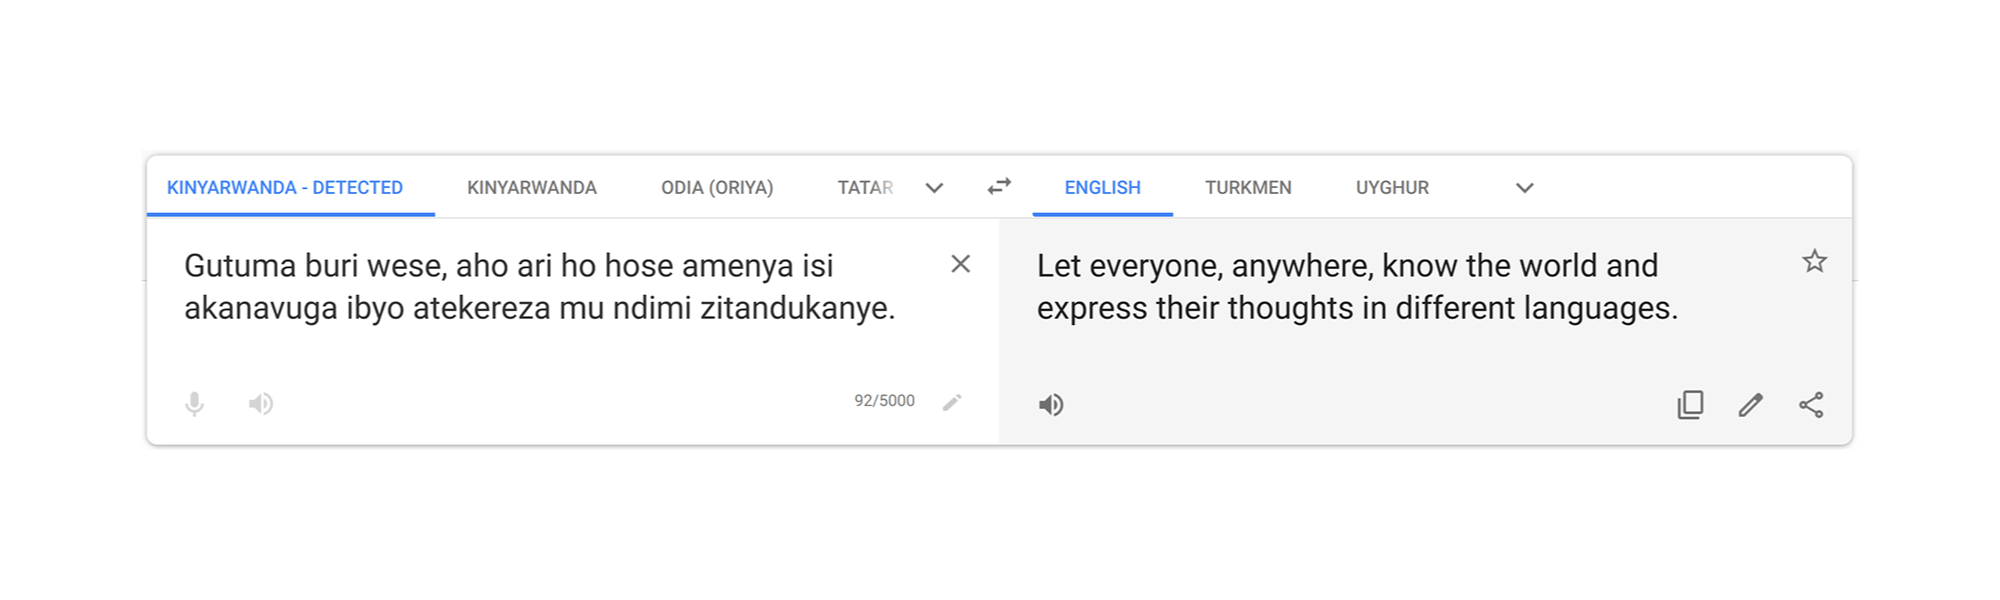 Dopo quattro anni, Google Traduttore aggiunge nuove lingue